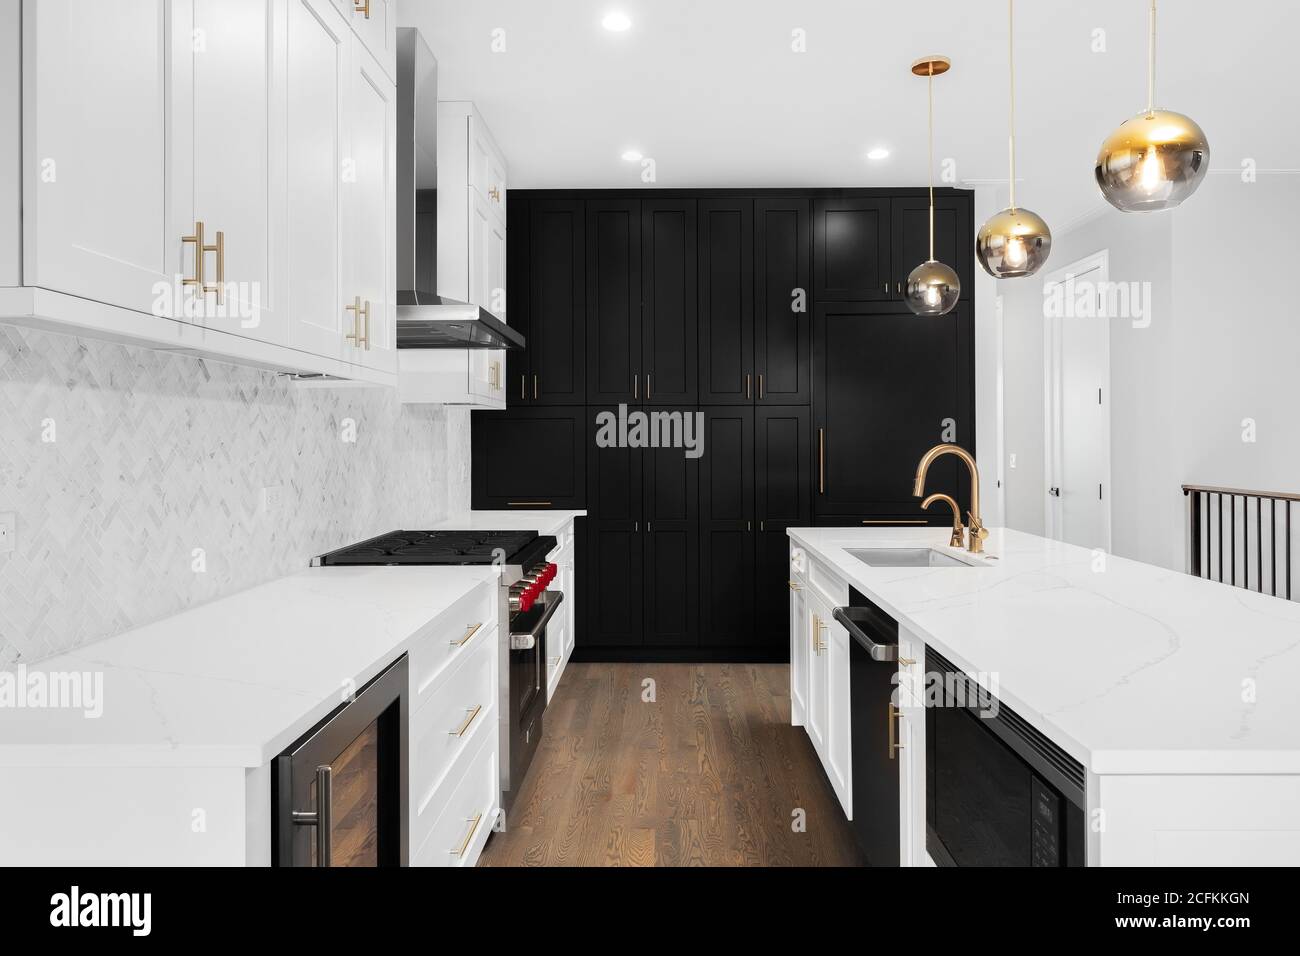 Eine luxuriöse, moderne Küche mit weißen und schwarzen Schränken, goldenen Armaturen und weißen Fischgrätfliesen. Stockfoto